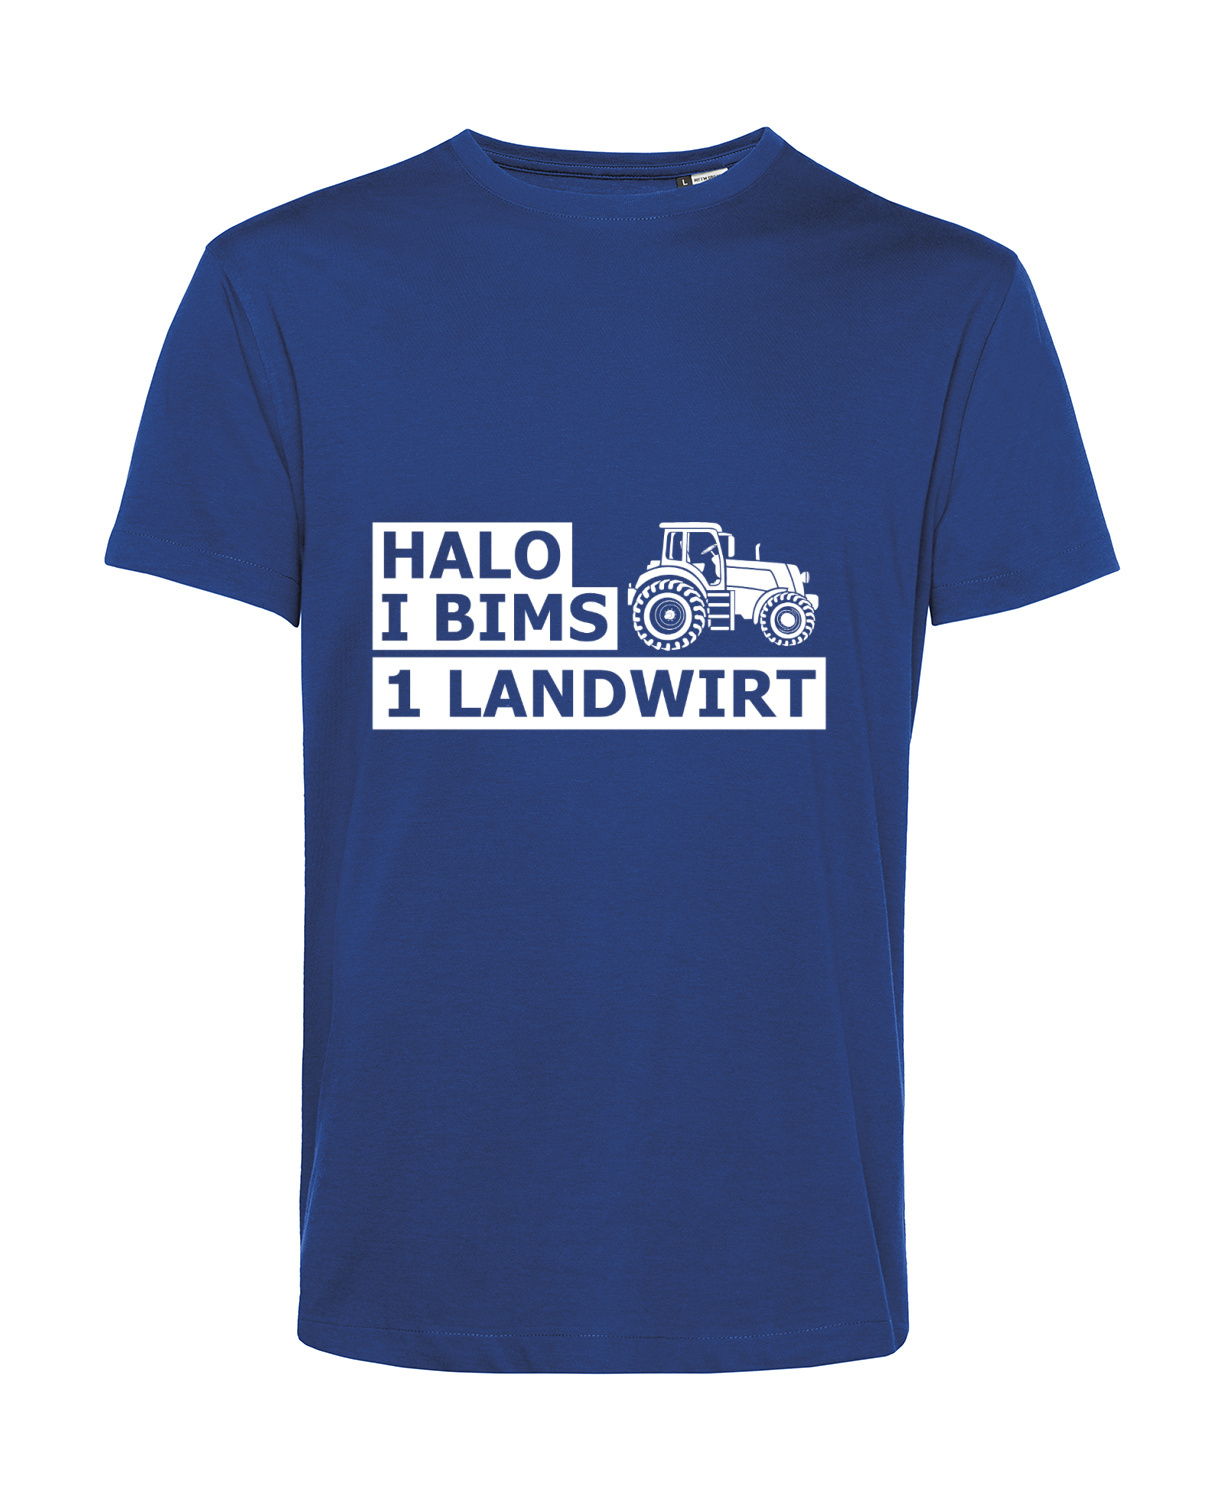 Nachhaltiges T-Shirt Herren Landwirt - Halo I bims 1 Landwirt